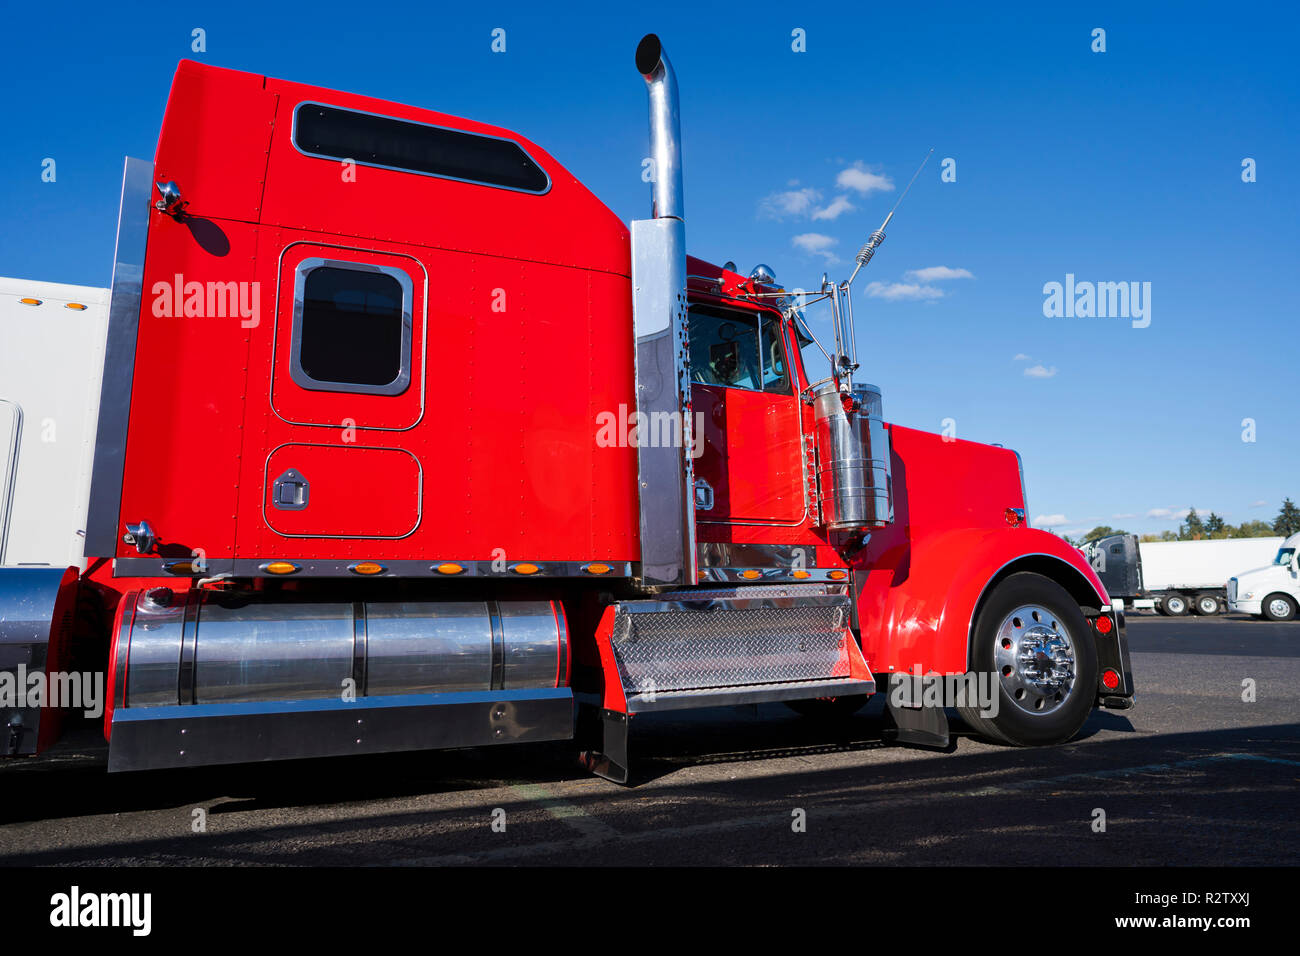 Profil de gros camion rouge vif semi truck américain classique avec parties chromées et semi-remorque à plateau transporter la cargaison commerciale fixée par élingues sur socle Banque D'Images